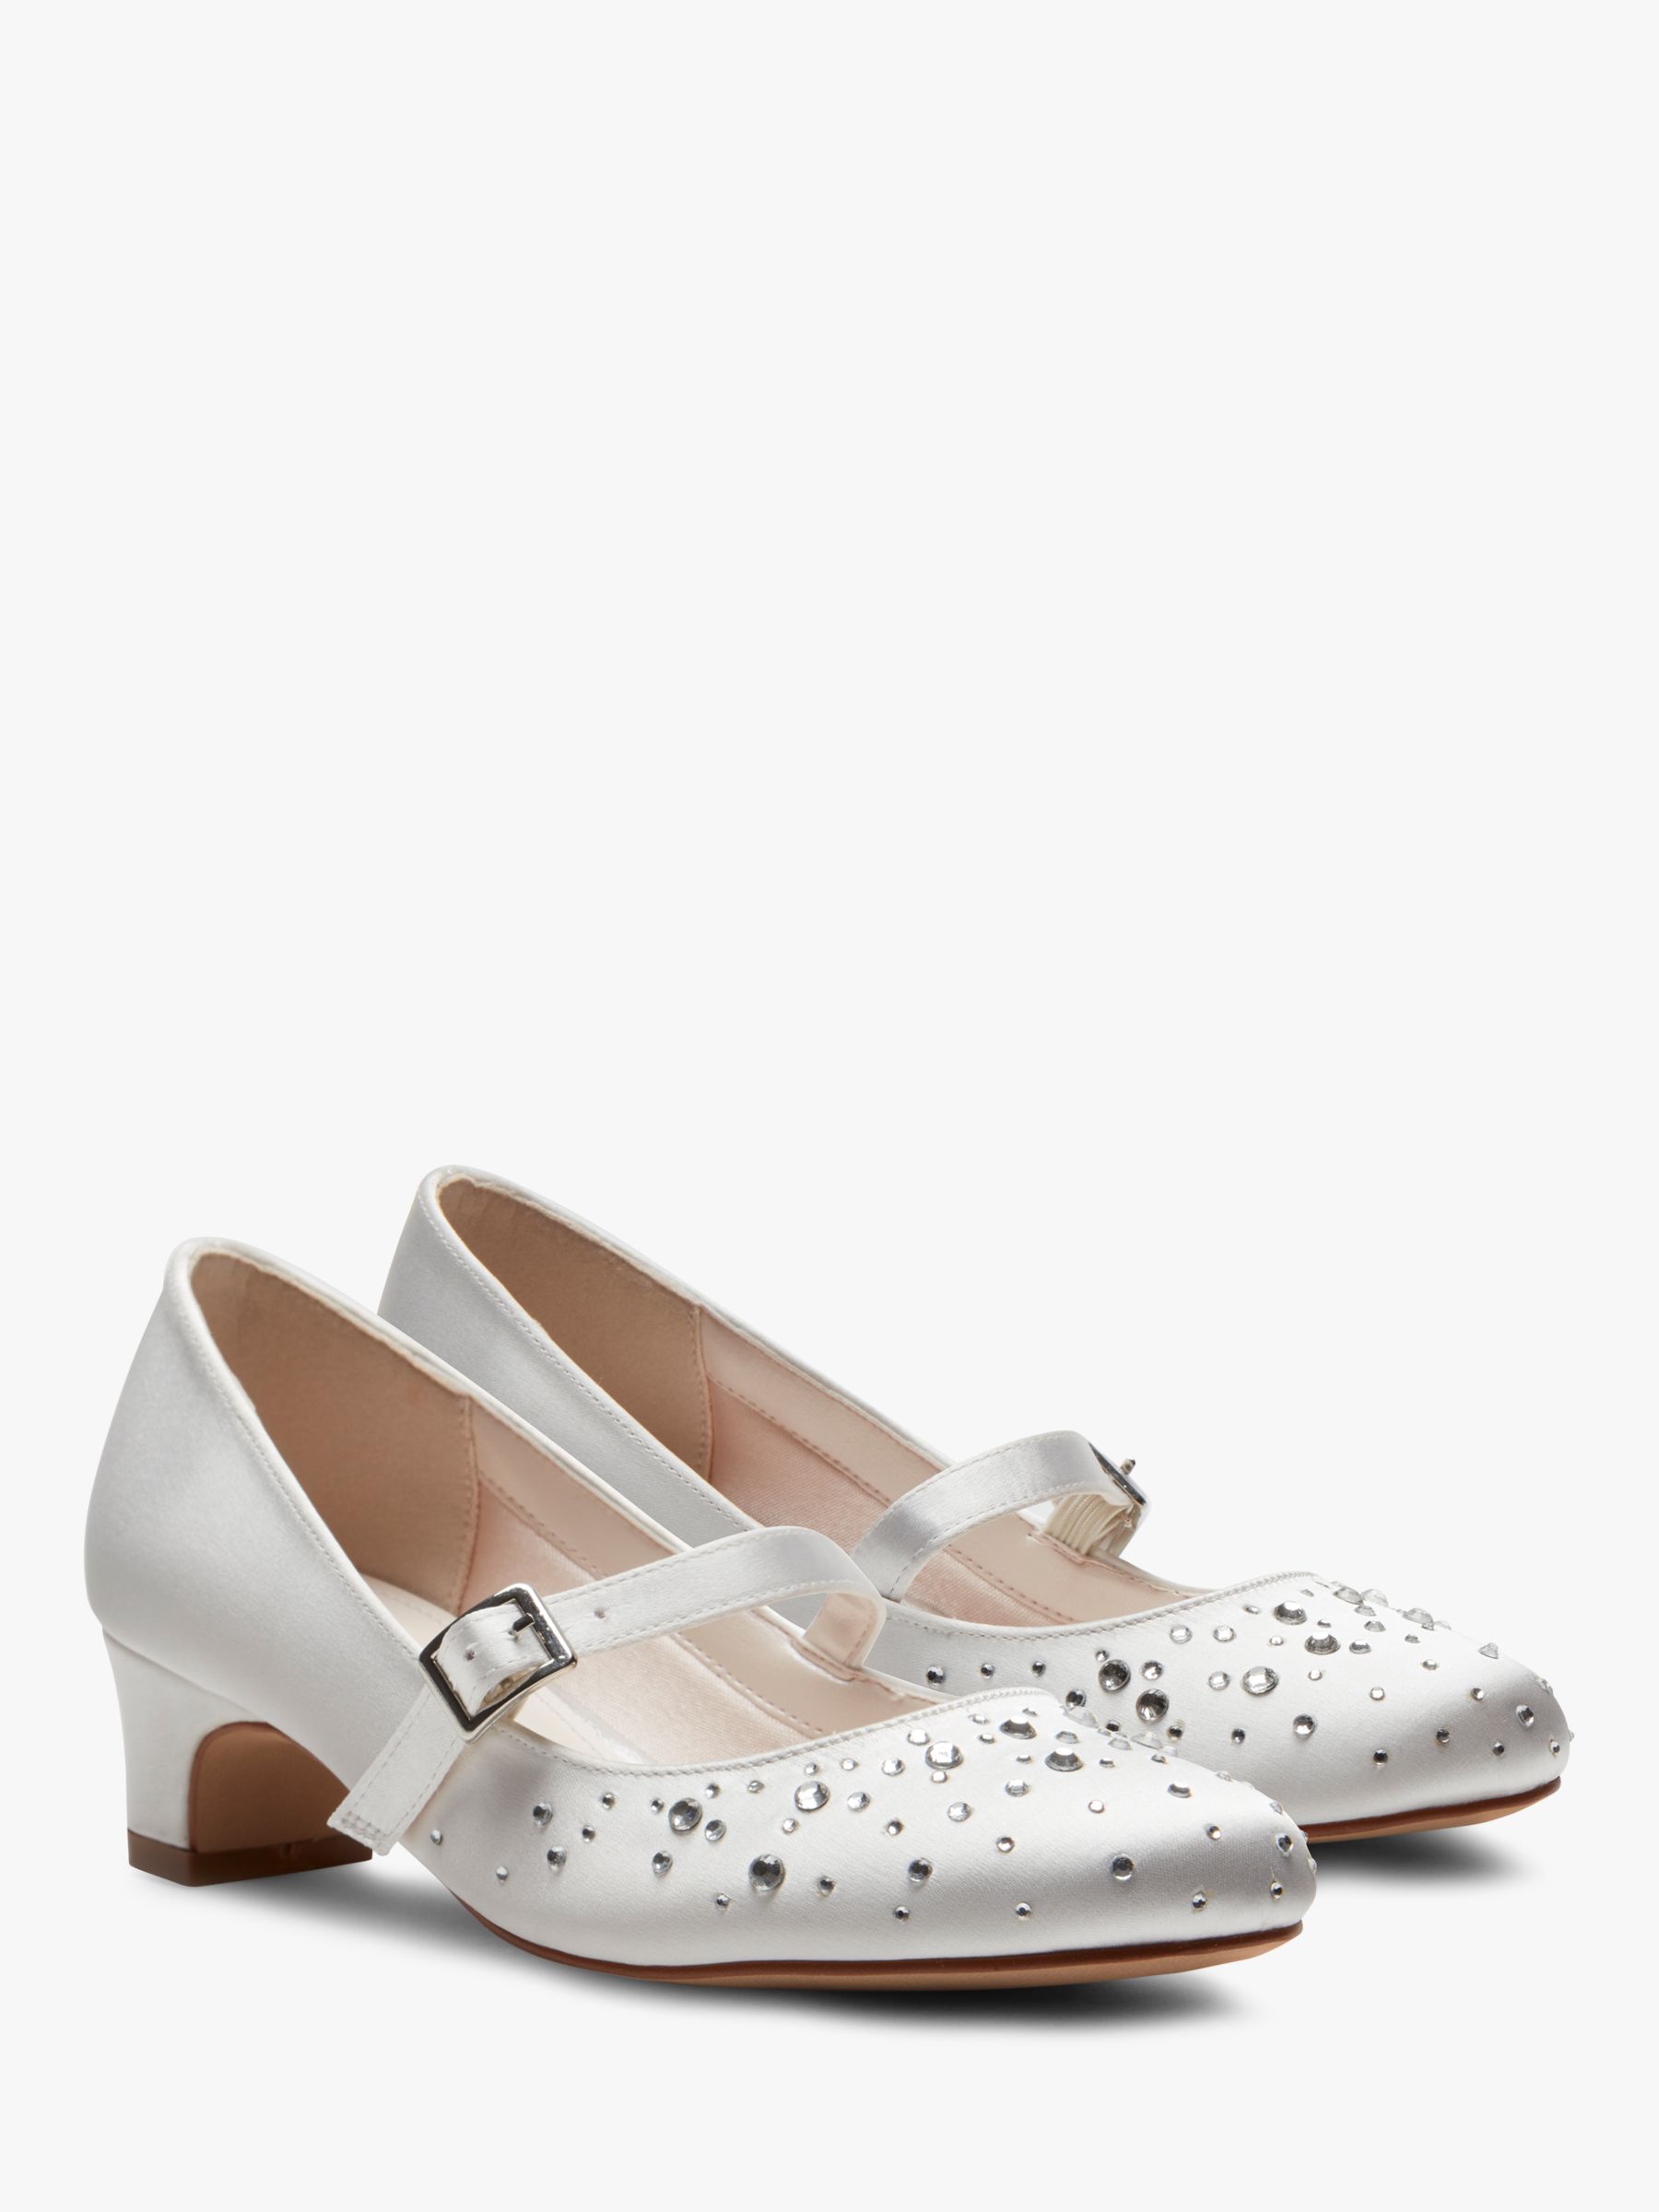 Rainbow Club Cherry Bridesmaid Shoes, White Communion, 10 Jnr